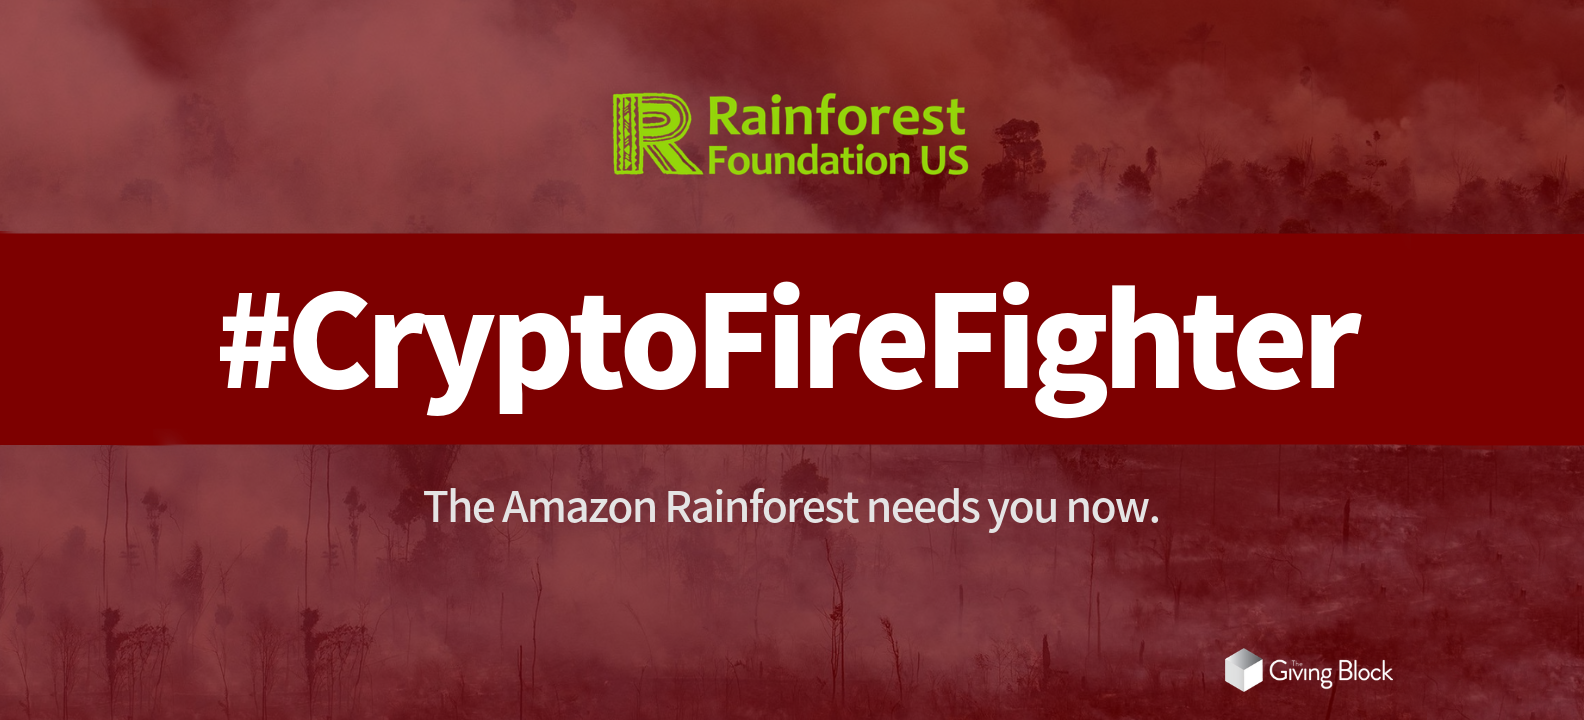 Bitcoin für den Regenwald: Wie die Rainforest Foundation berichtet, arbeitet sie bereits seit Mai 2014 an einer eigenen Kryptowährung namens BitSeeds.